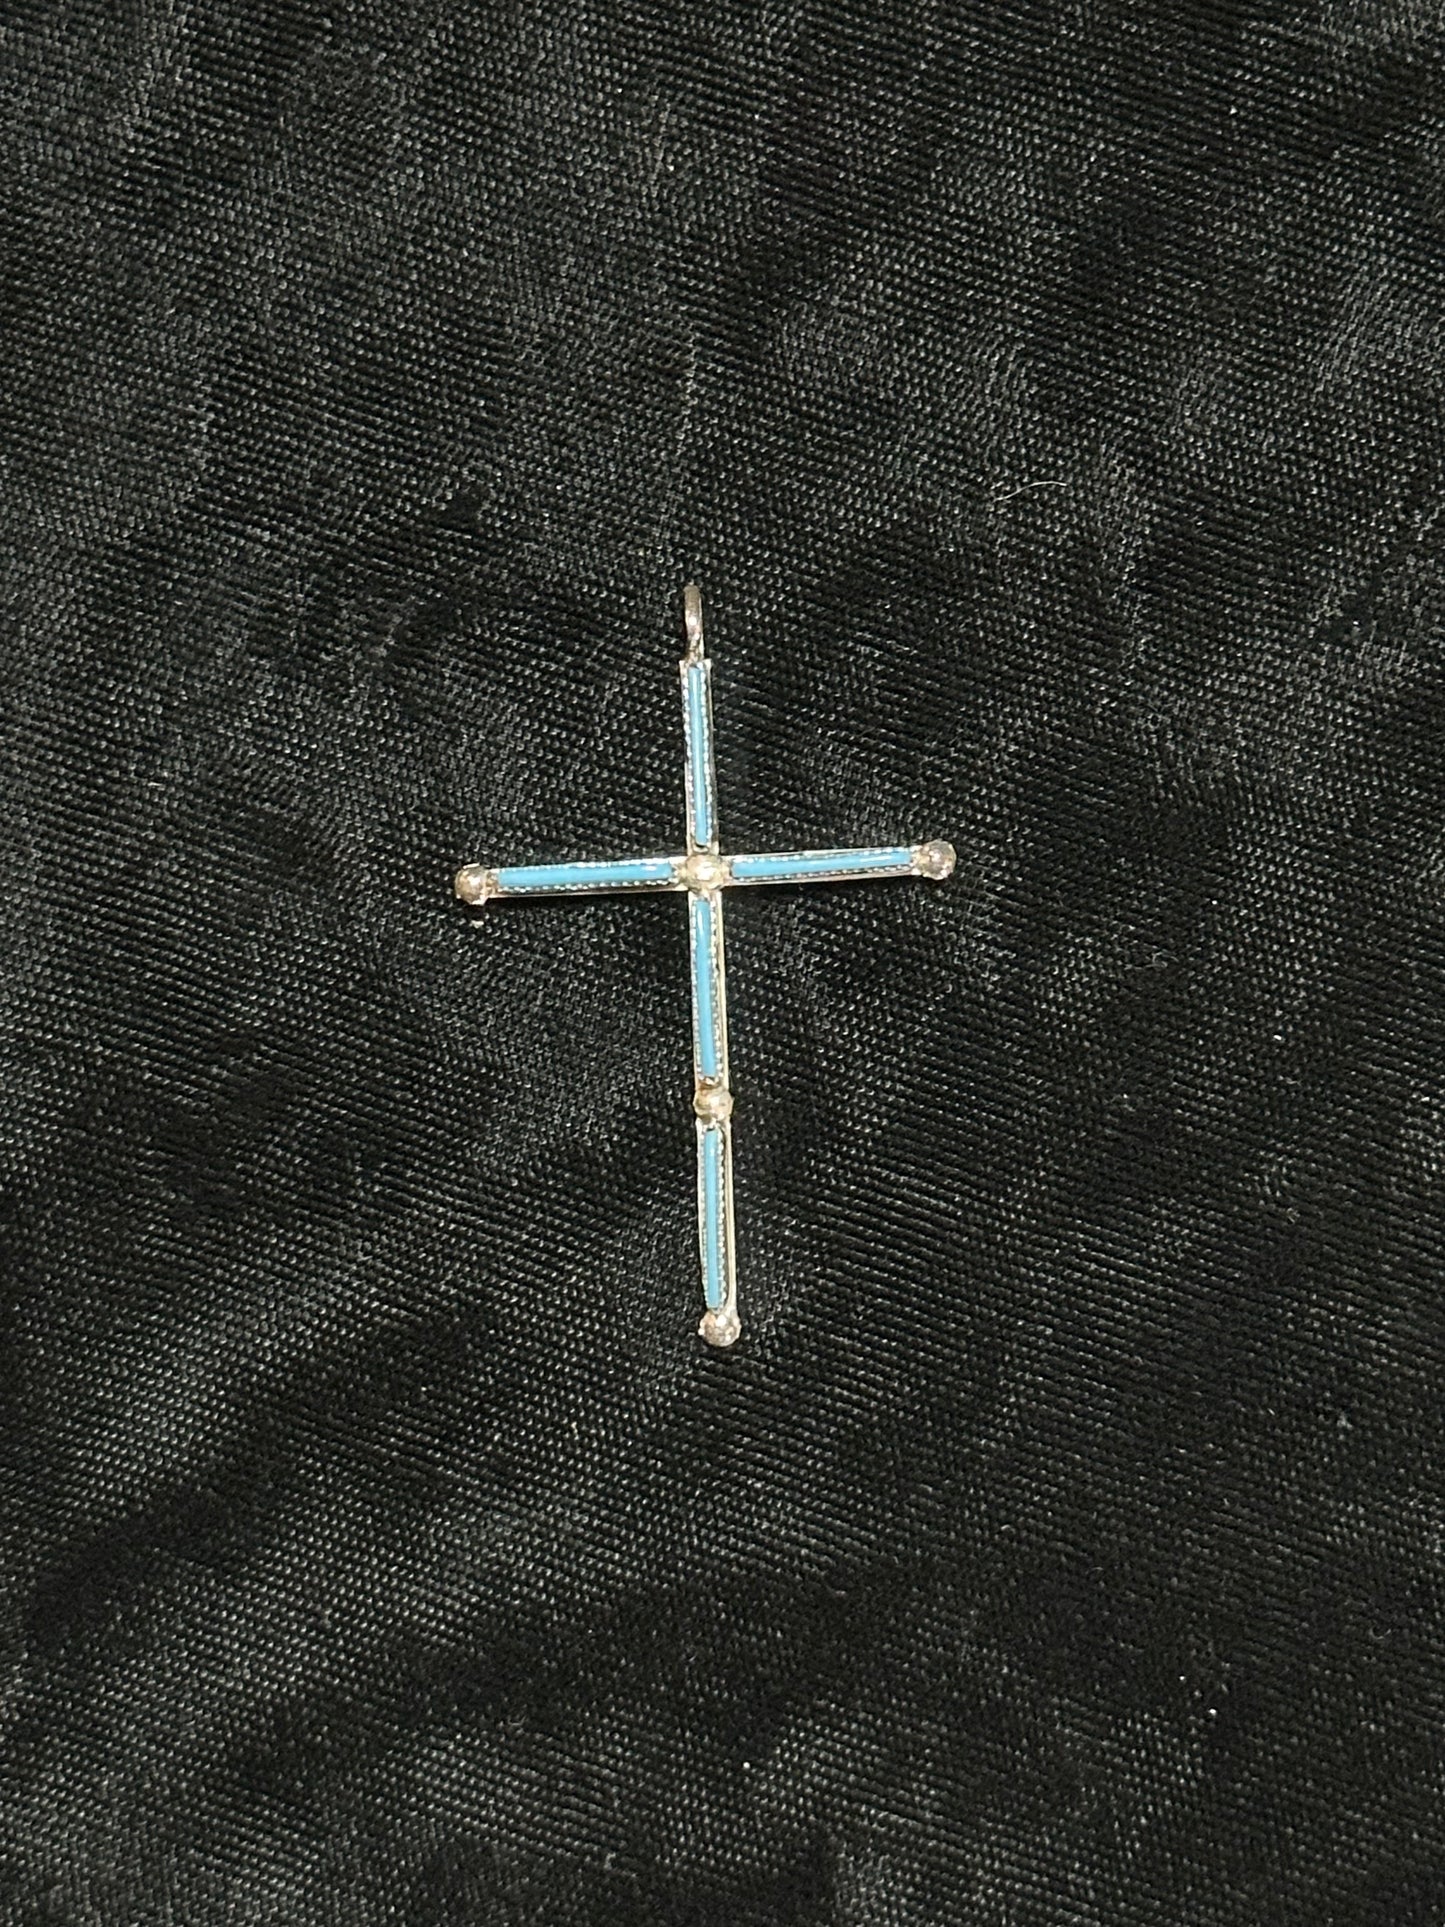 Turquoise Needlepoint Cross Pendant by Ashley Laate, Zuni